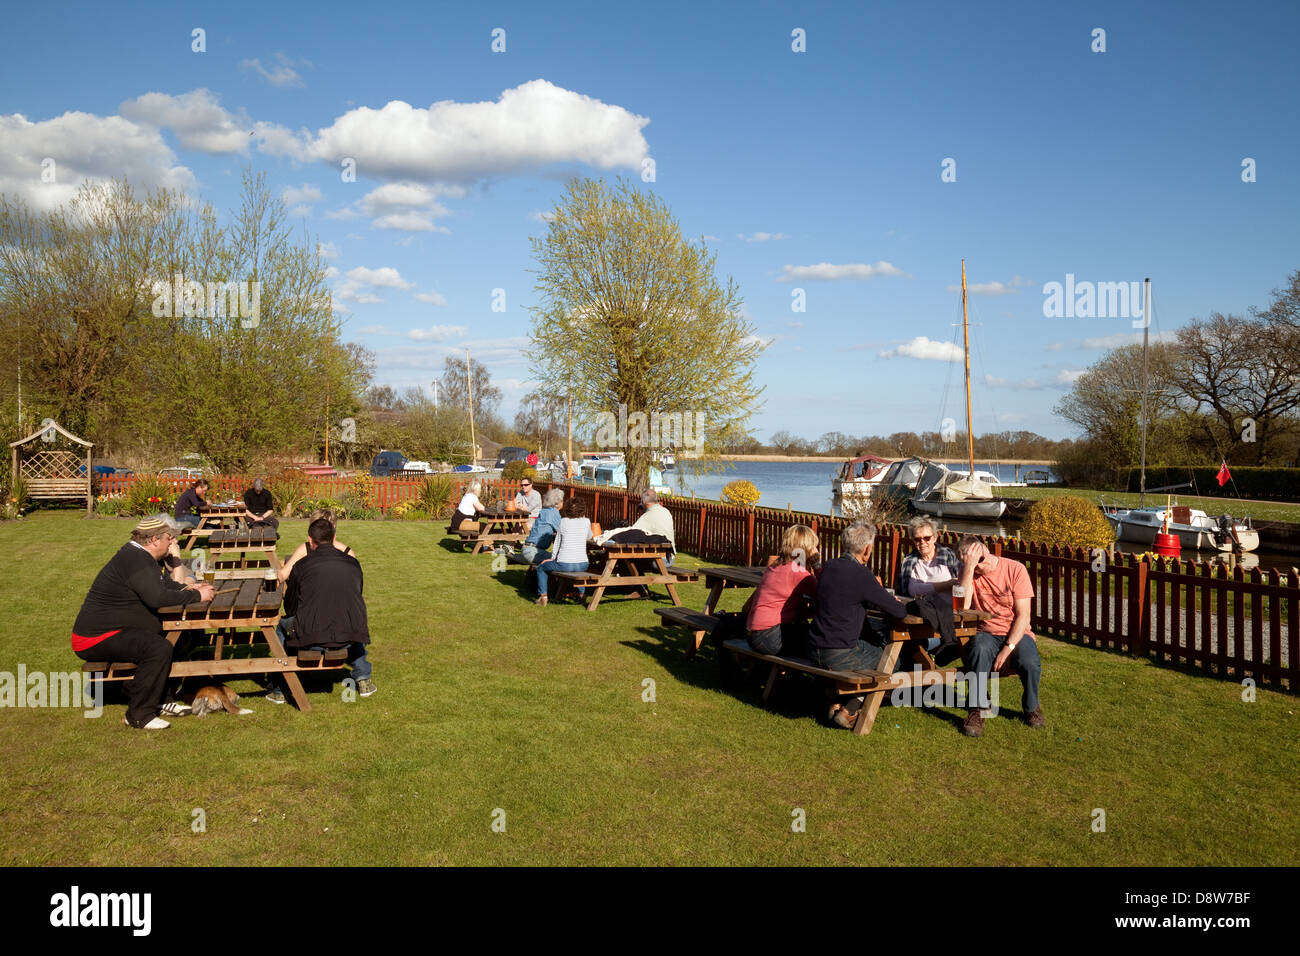 Les gens assis à l'extérieur dans le café potable, navire de plaisance Inn, Hickling, Norfolk Broads, UK Banque D'Images